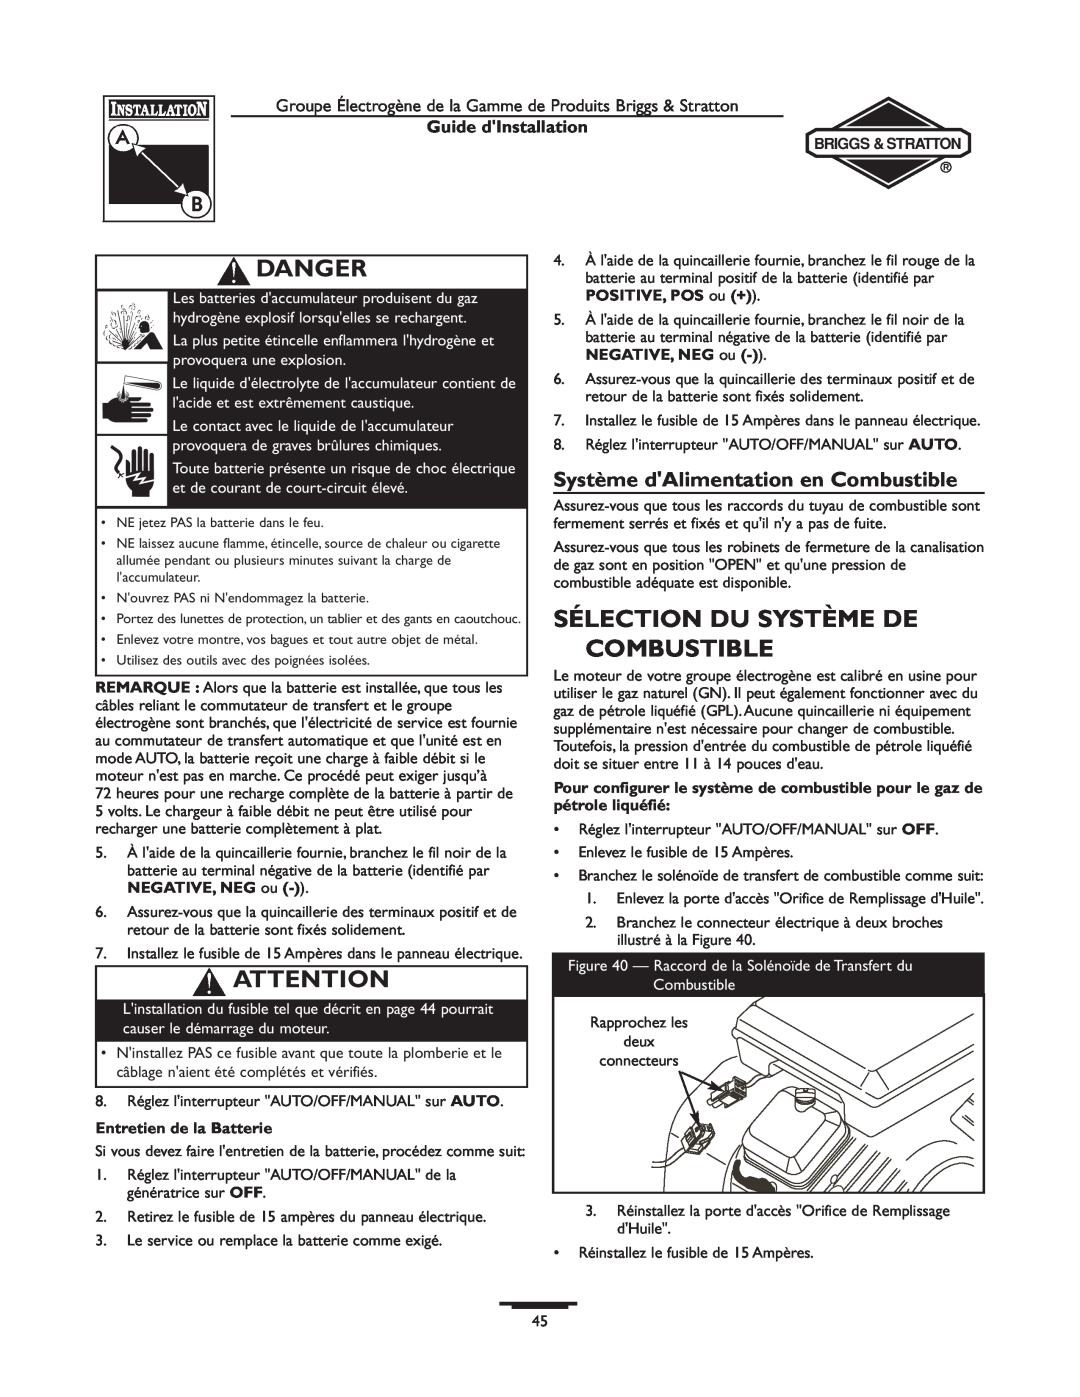 Briggs & Stratton 01815-0, 01938-0 manual Sélection Du Système De Combustible, Système dAlimentation en Combustible, Danger 